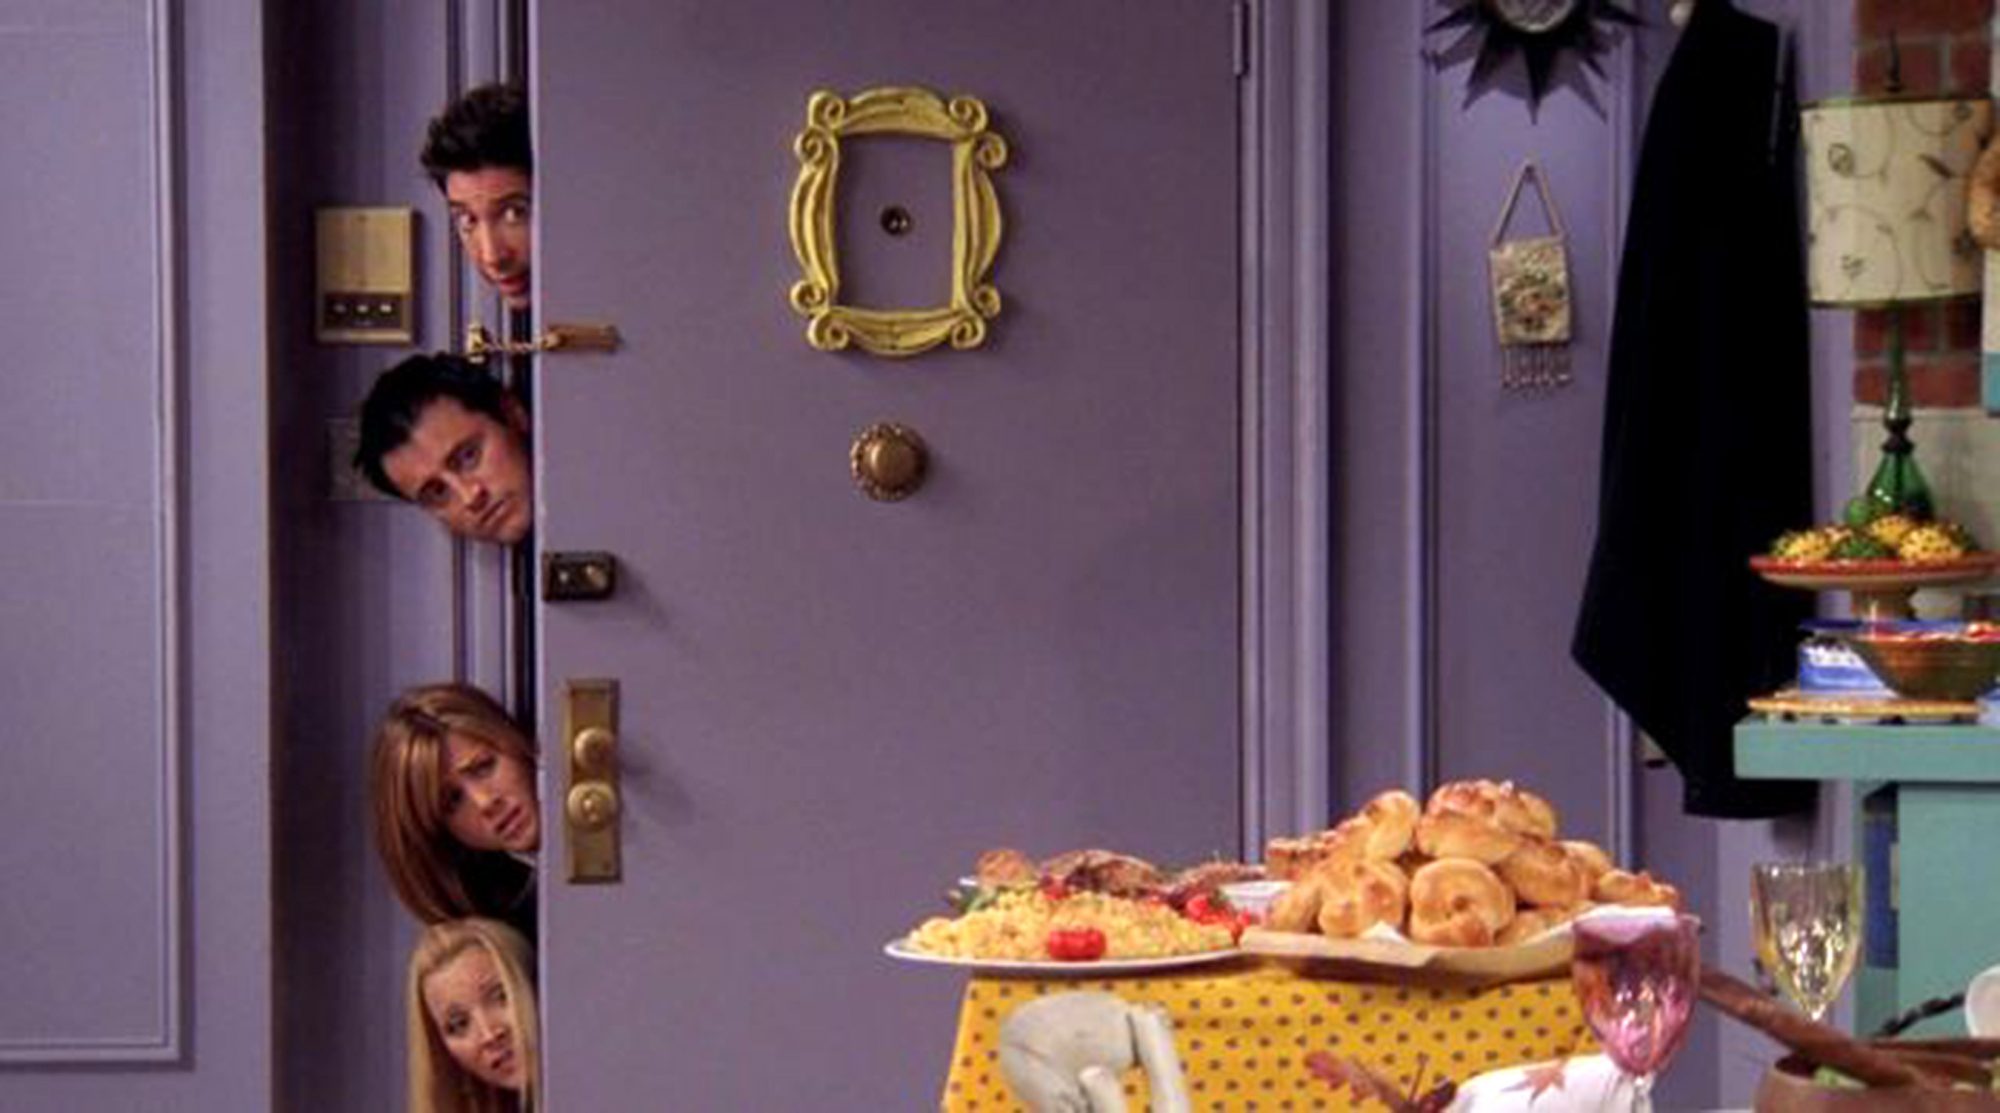 Monica door with phoebe, joey, ross, and rachel